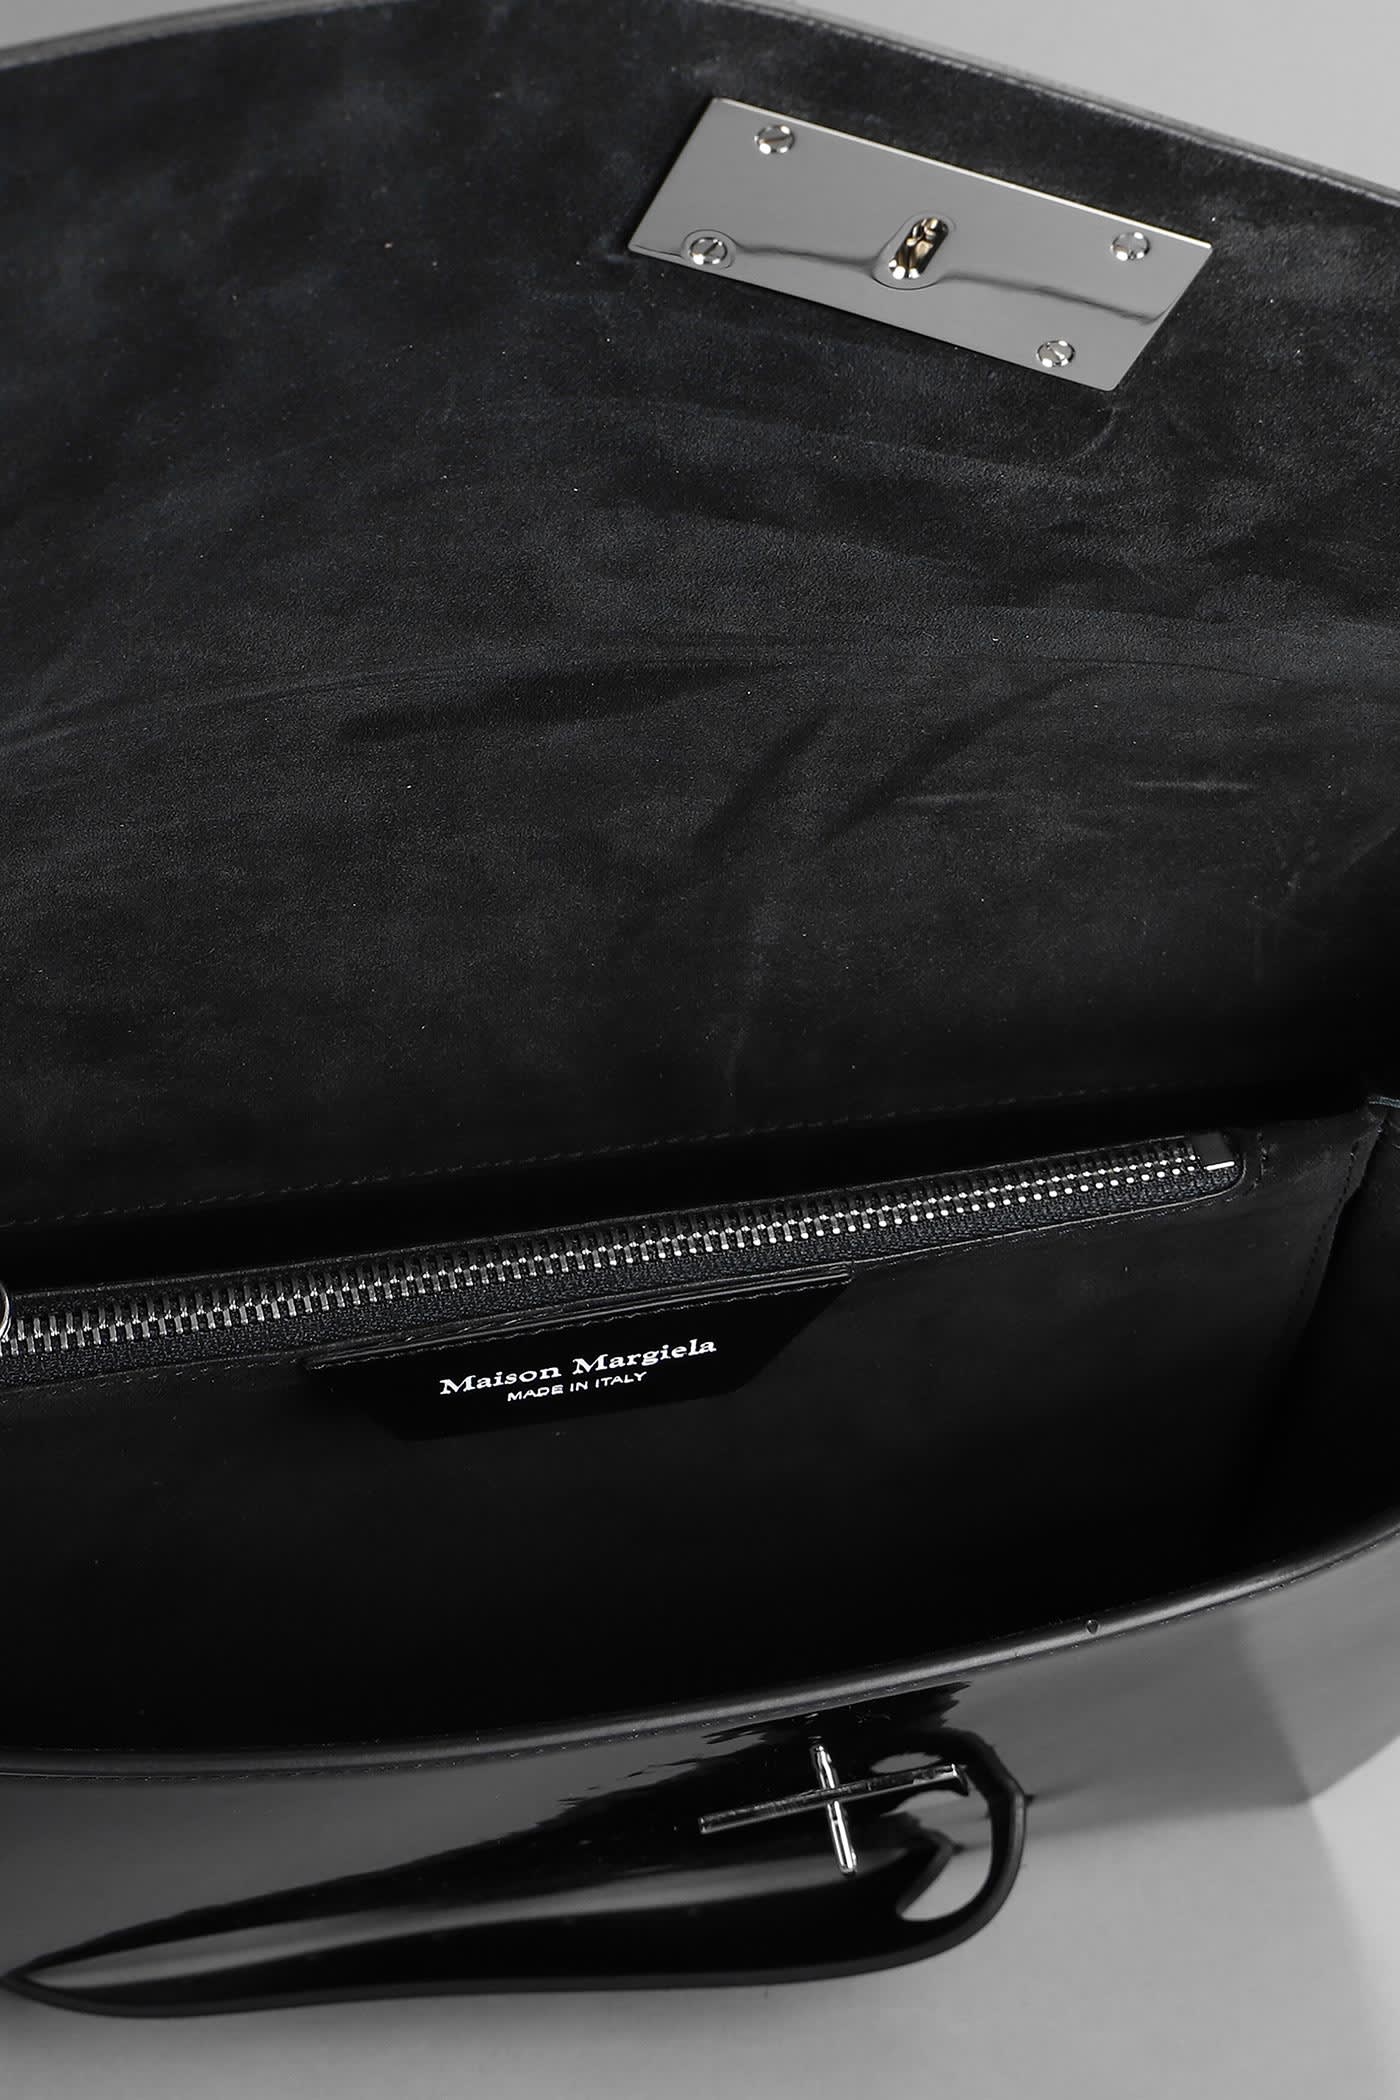 Maison Margiela Snatched Big Shoulder Bag In Black Patent Leather 